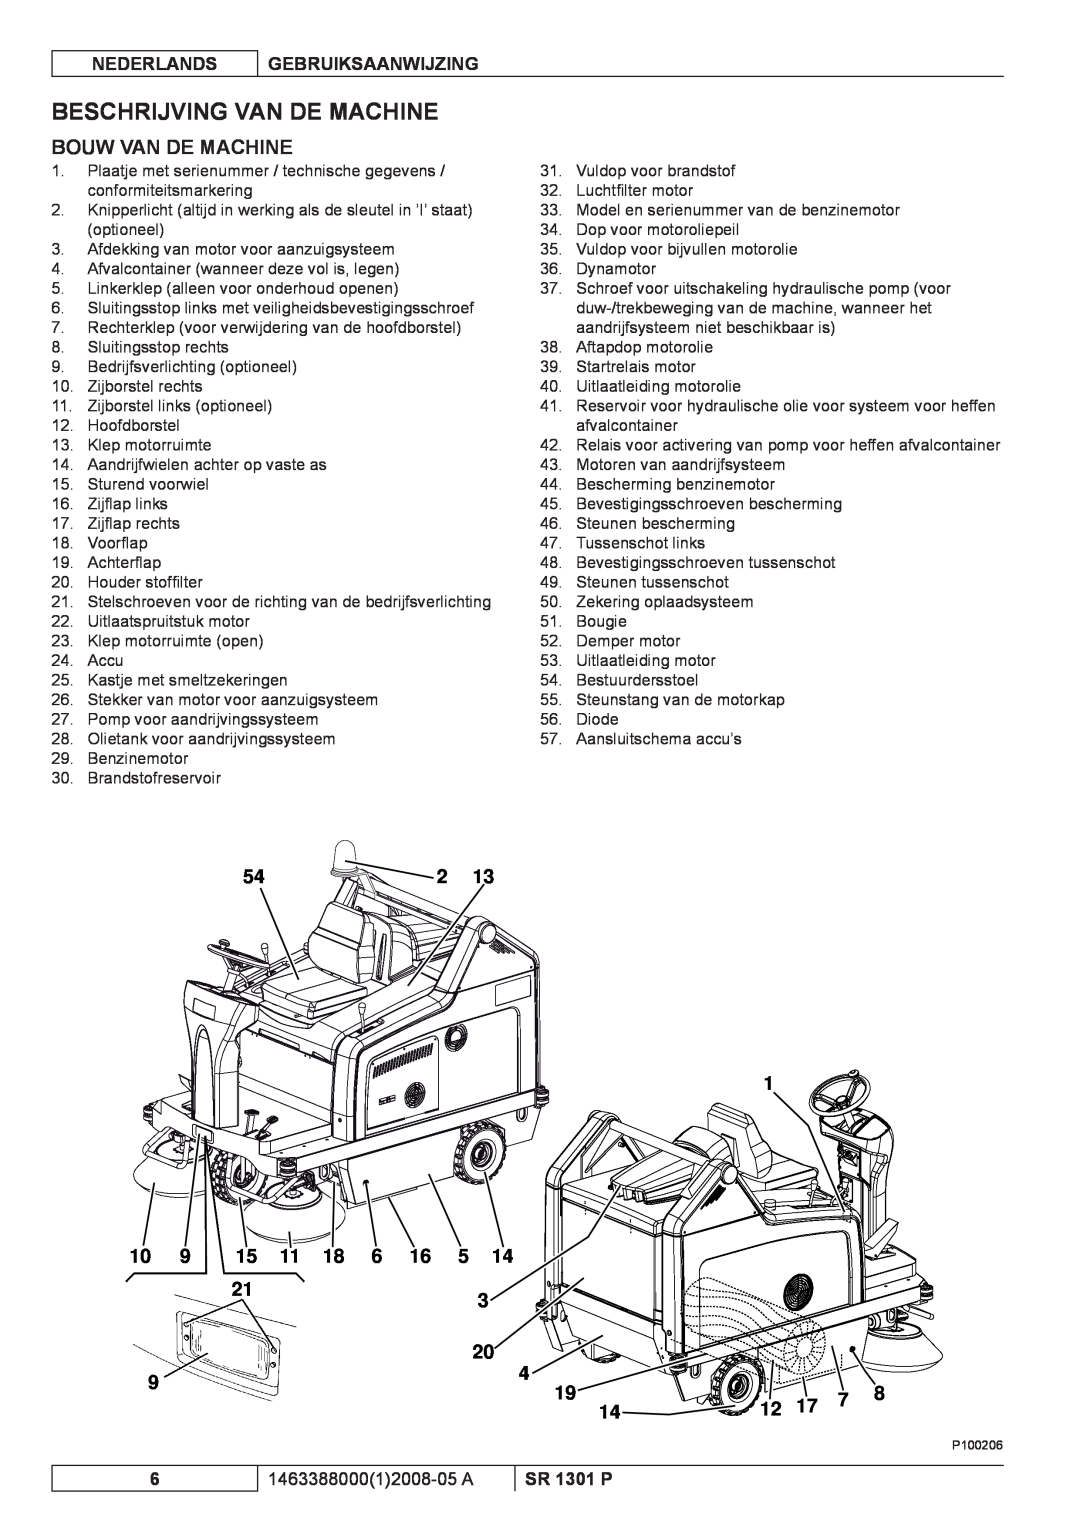 Nilfisk-ALTO SR 1301 P manuel dutilisation Beschrijving Van De Machine, Bouw Van De Machine, Nederlands, Gebruiksaanwijzing 